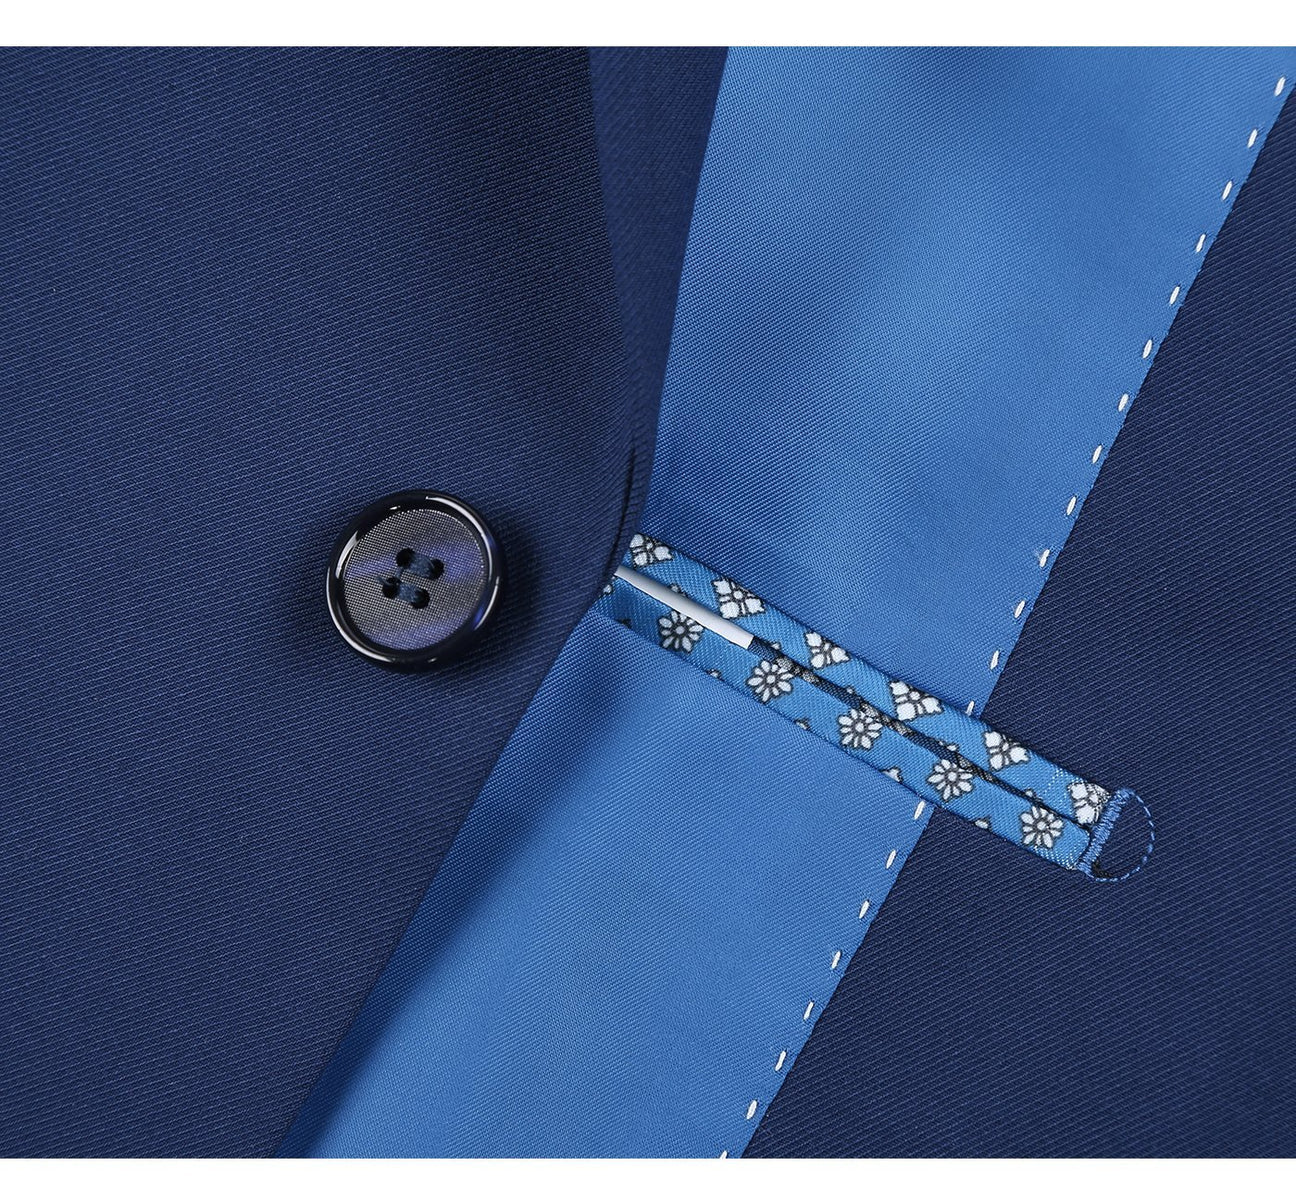 Renoir Slim Fit Blue 2 Button Notch Lapel Suit